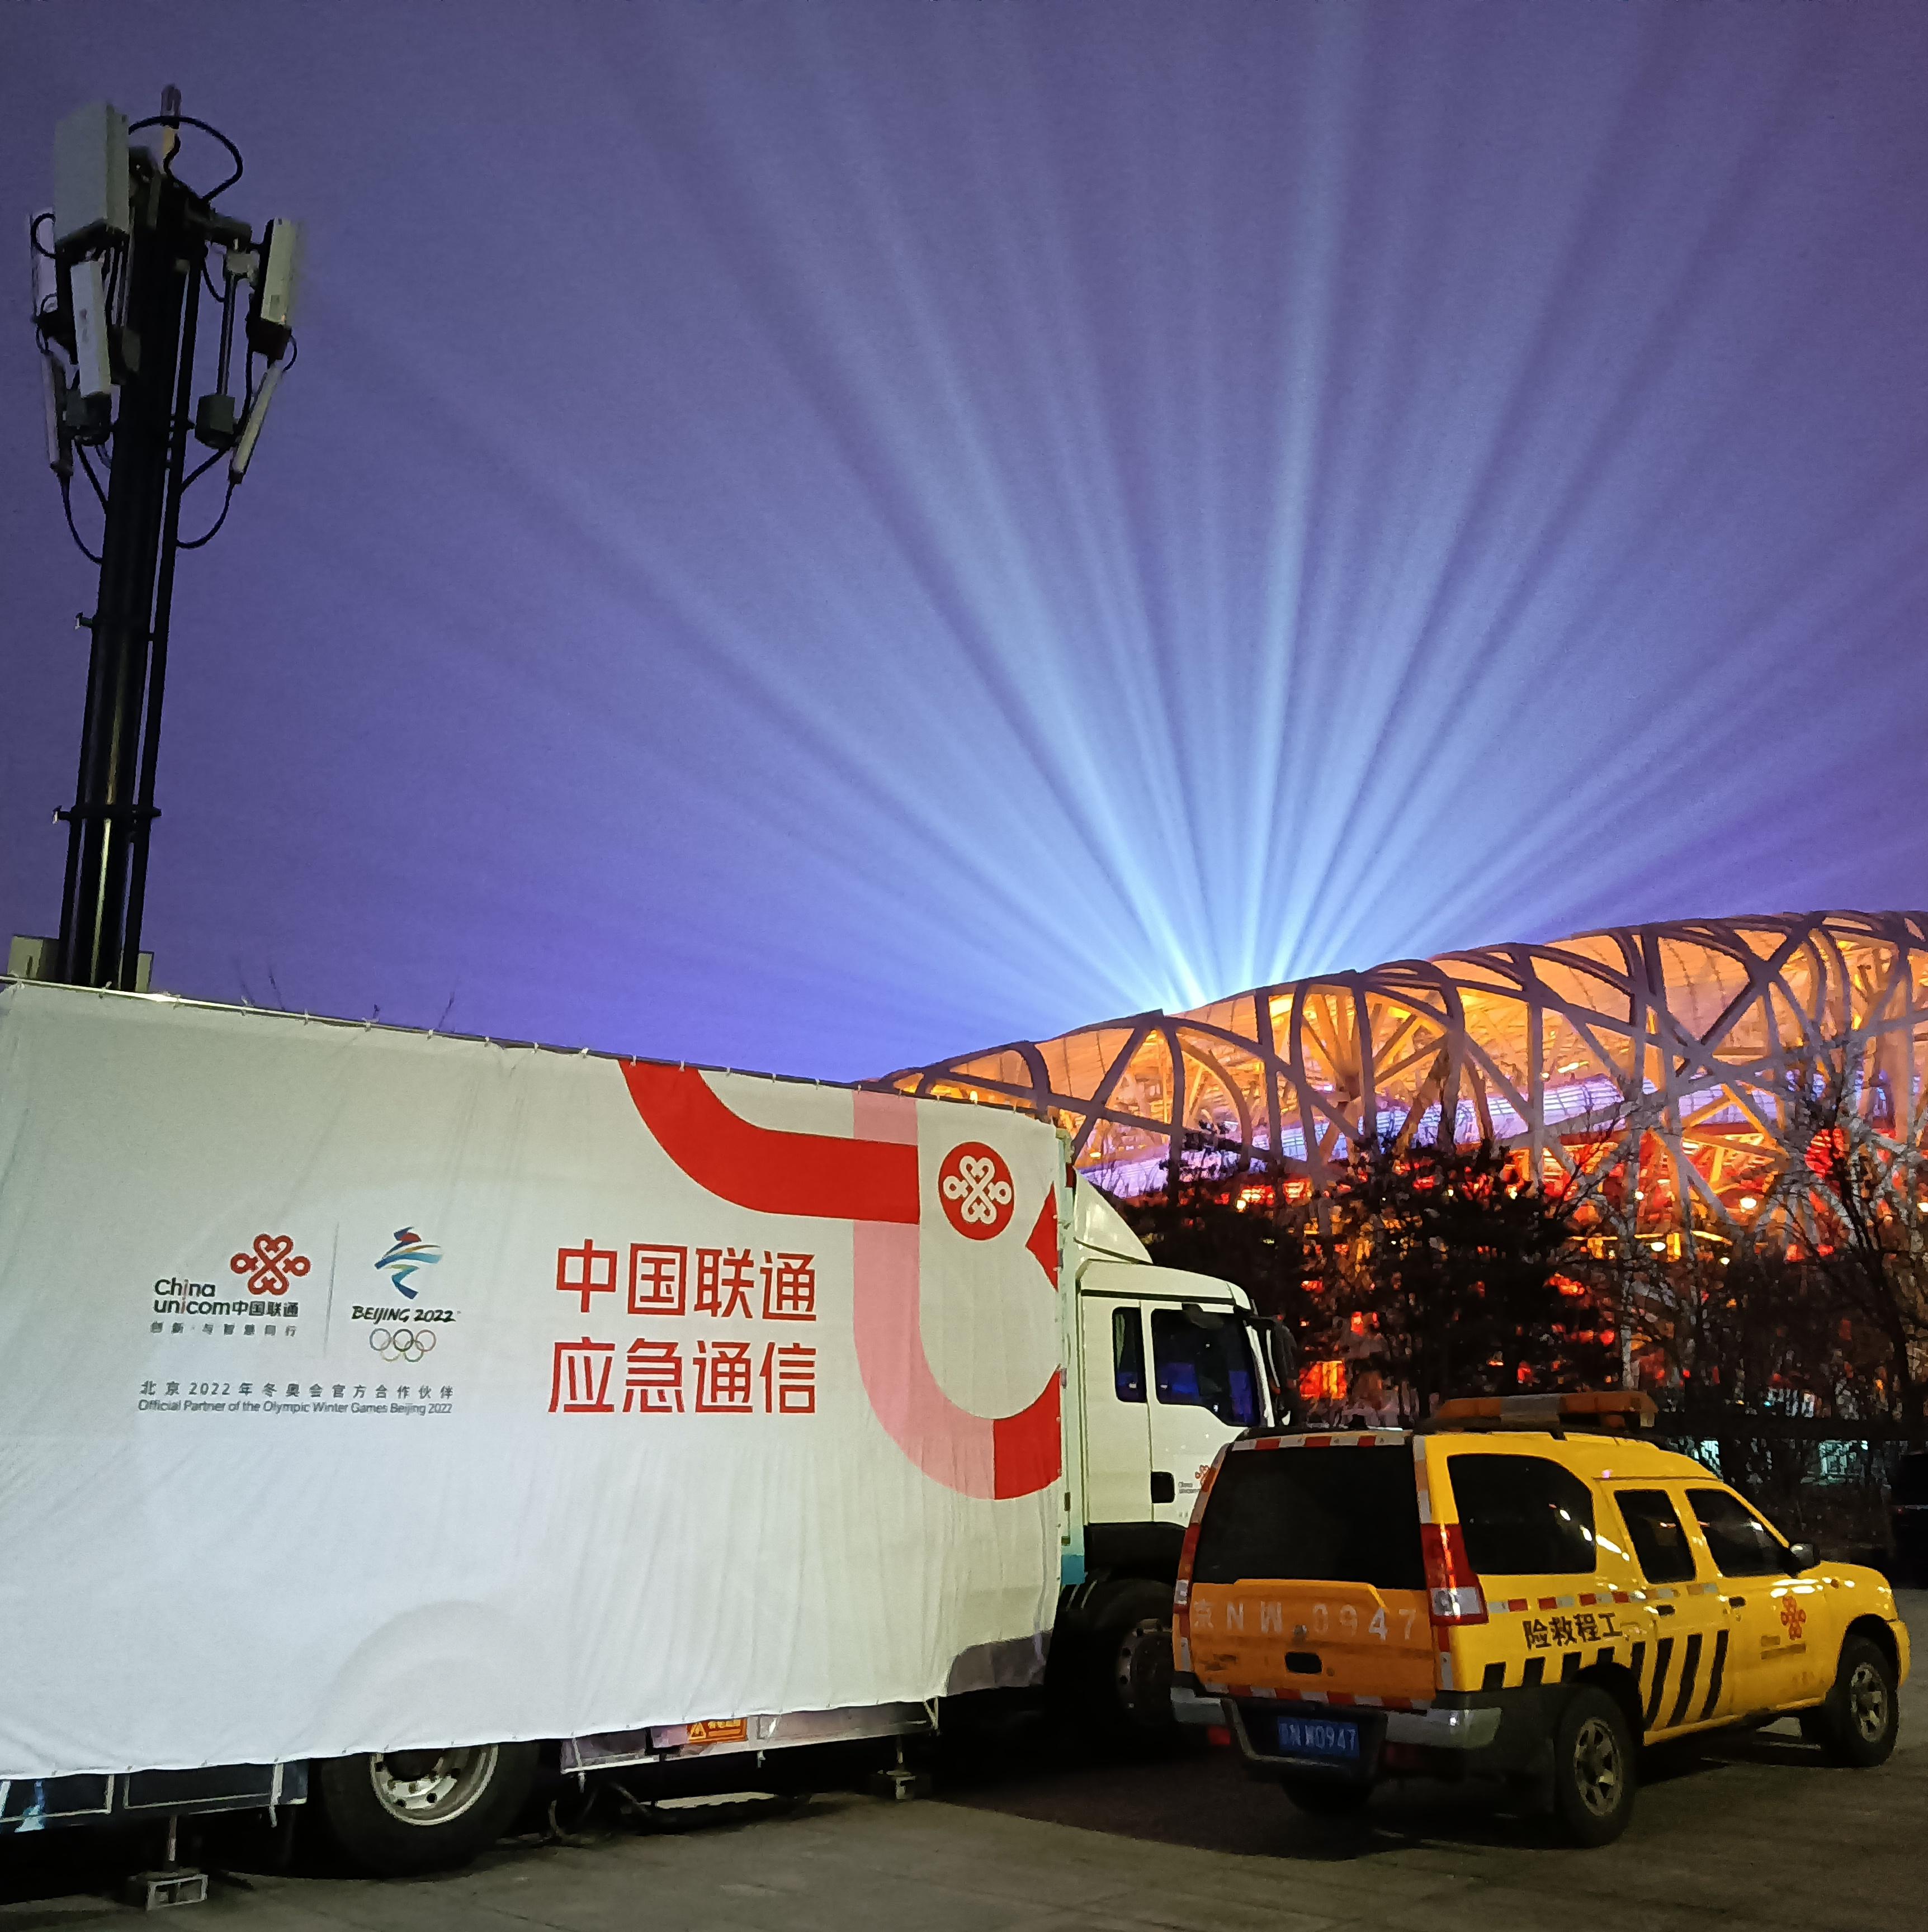 冬奥时刻中国联通圆满完成北京2022年冬奥会开幕式通信保障